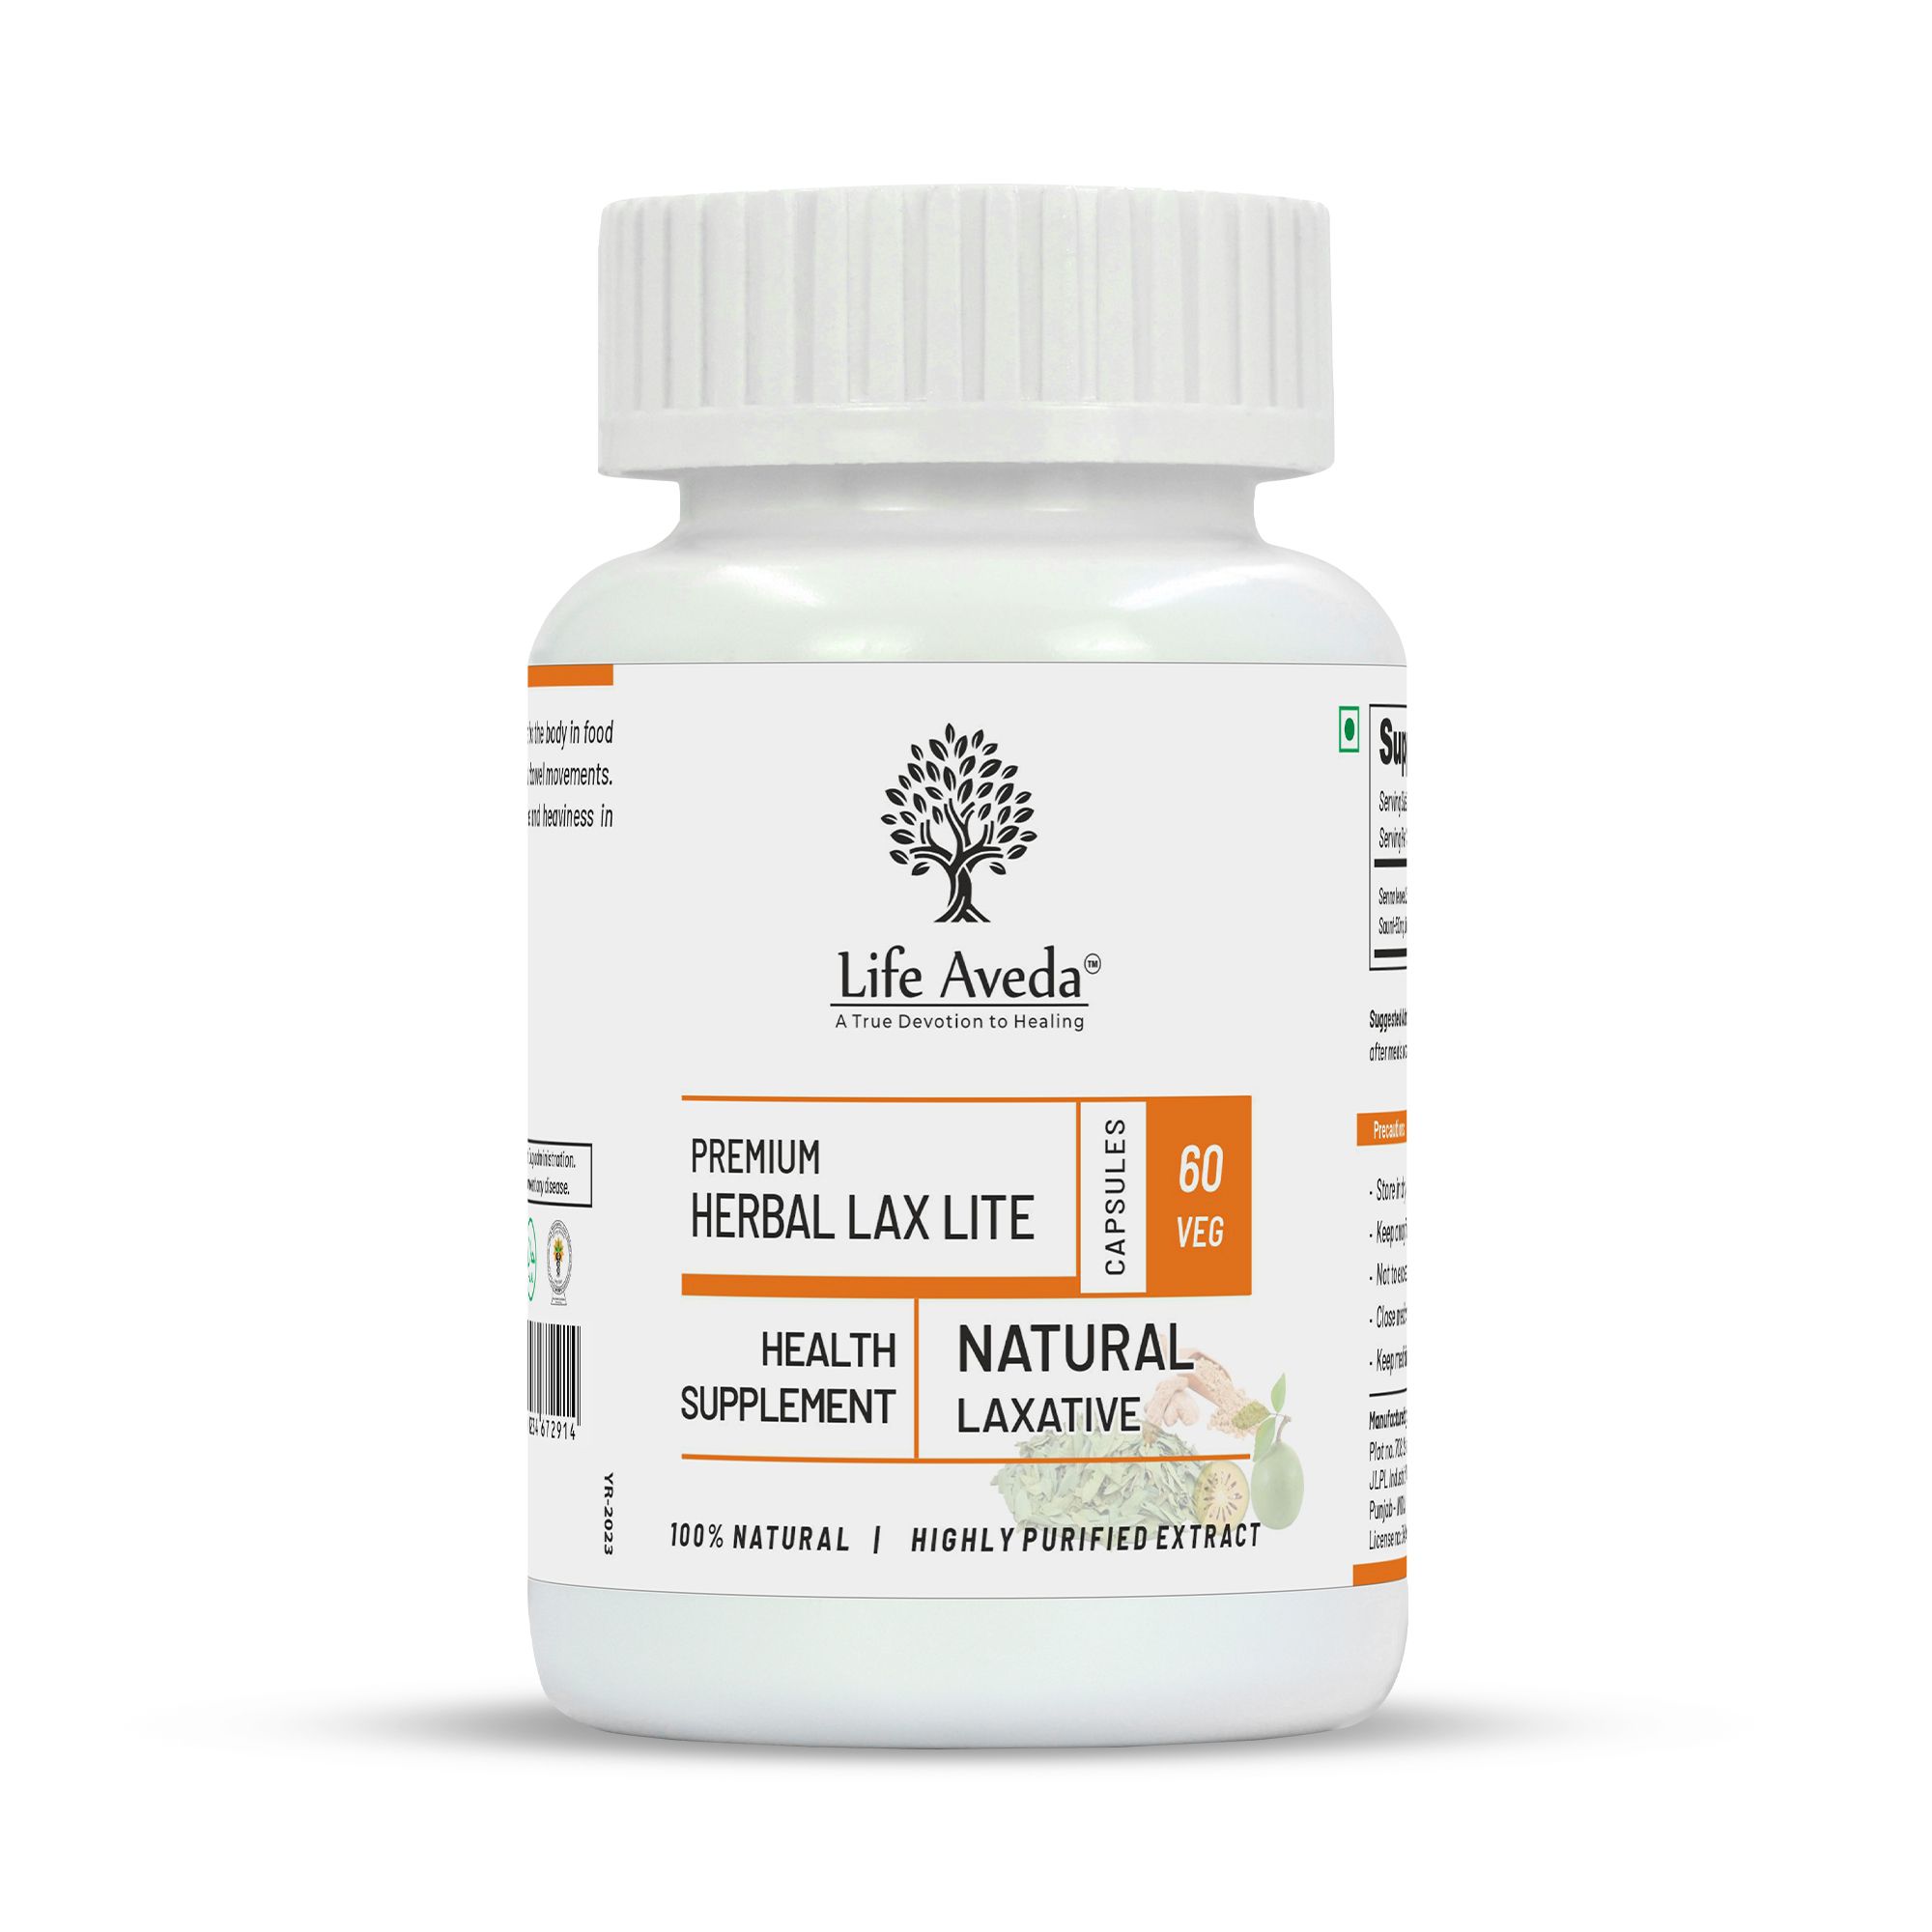 Life Aveda Herbal Lax Lite - 60 Capsules